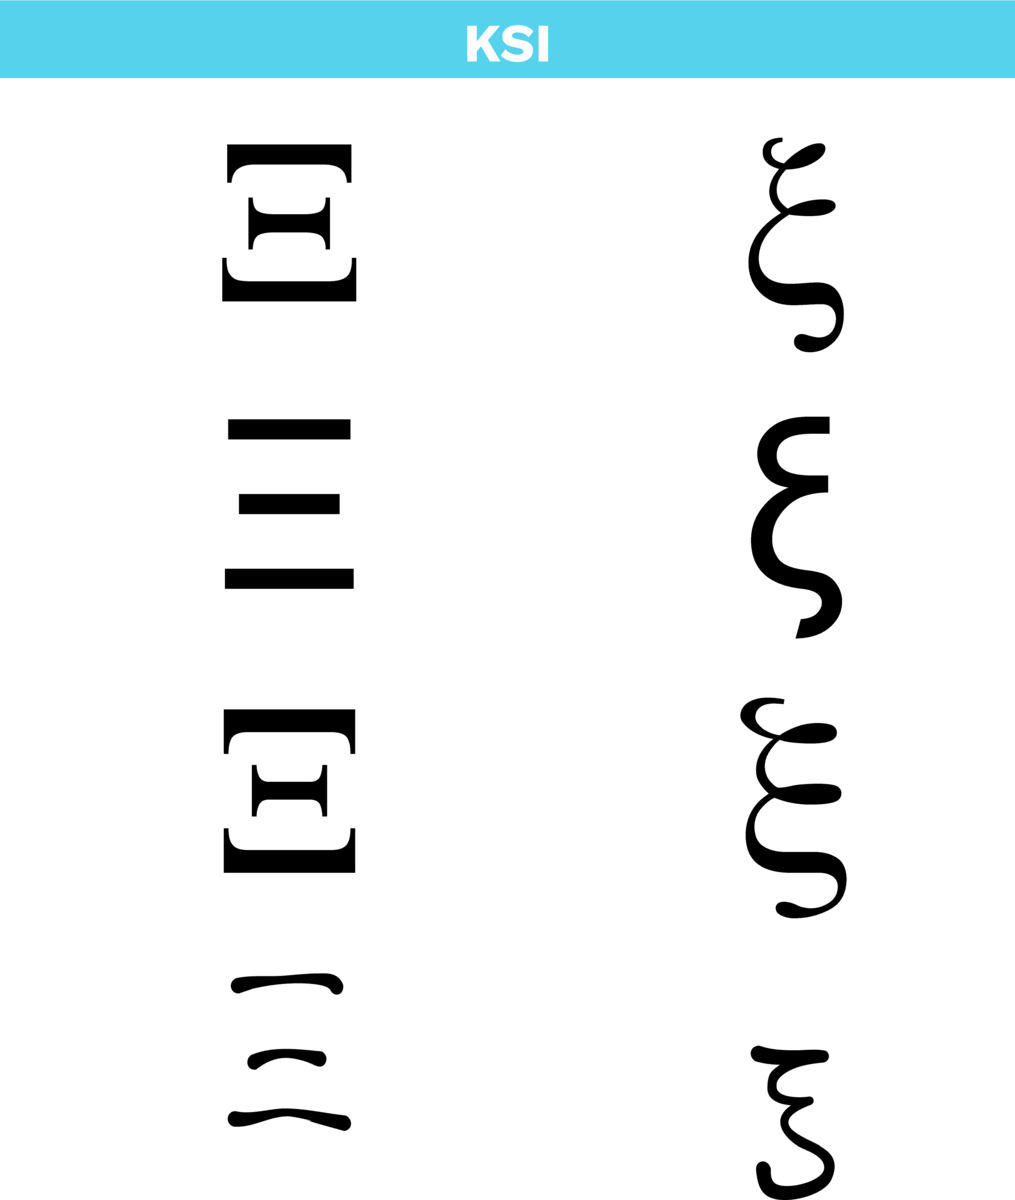 Bokstaven ksi i det greske alfabetet i ulike skrifttypar